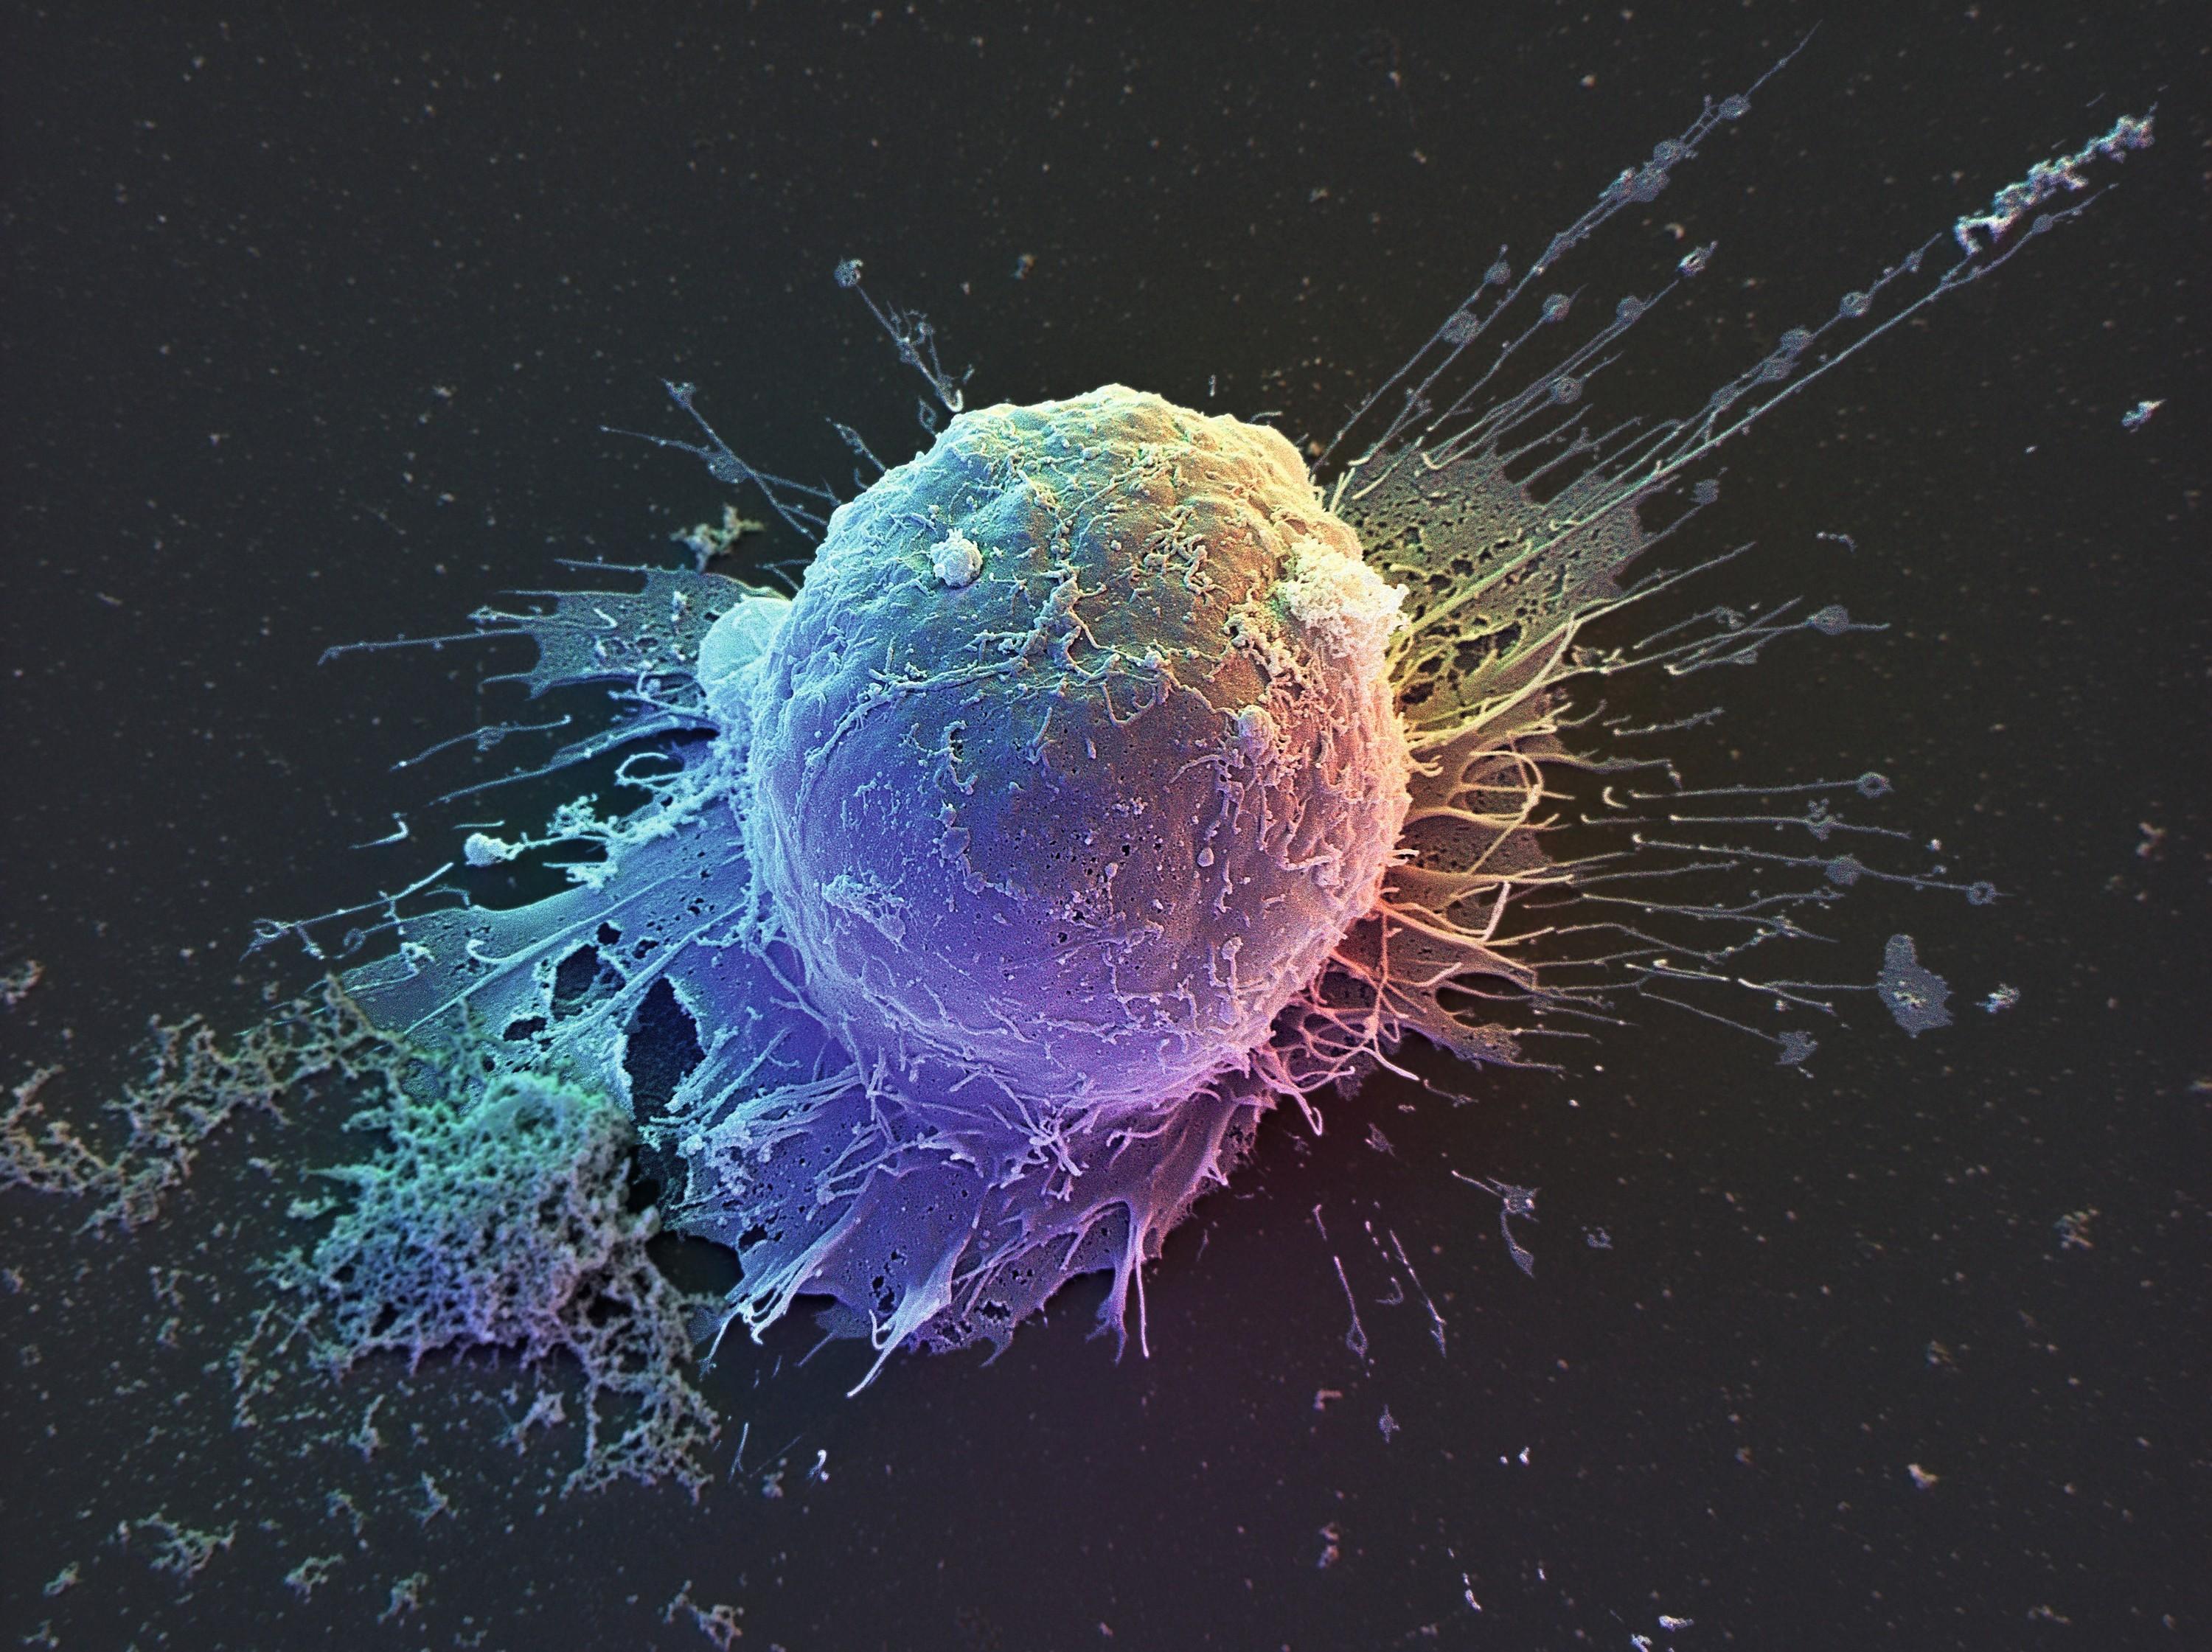 Cellule souche embryonnaire humaine observée au microscope électronique